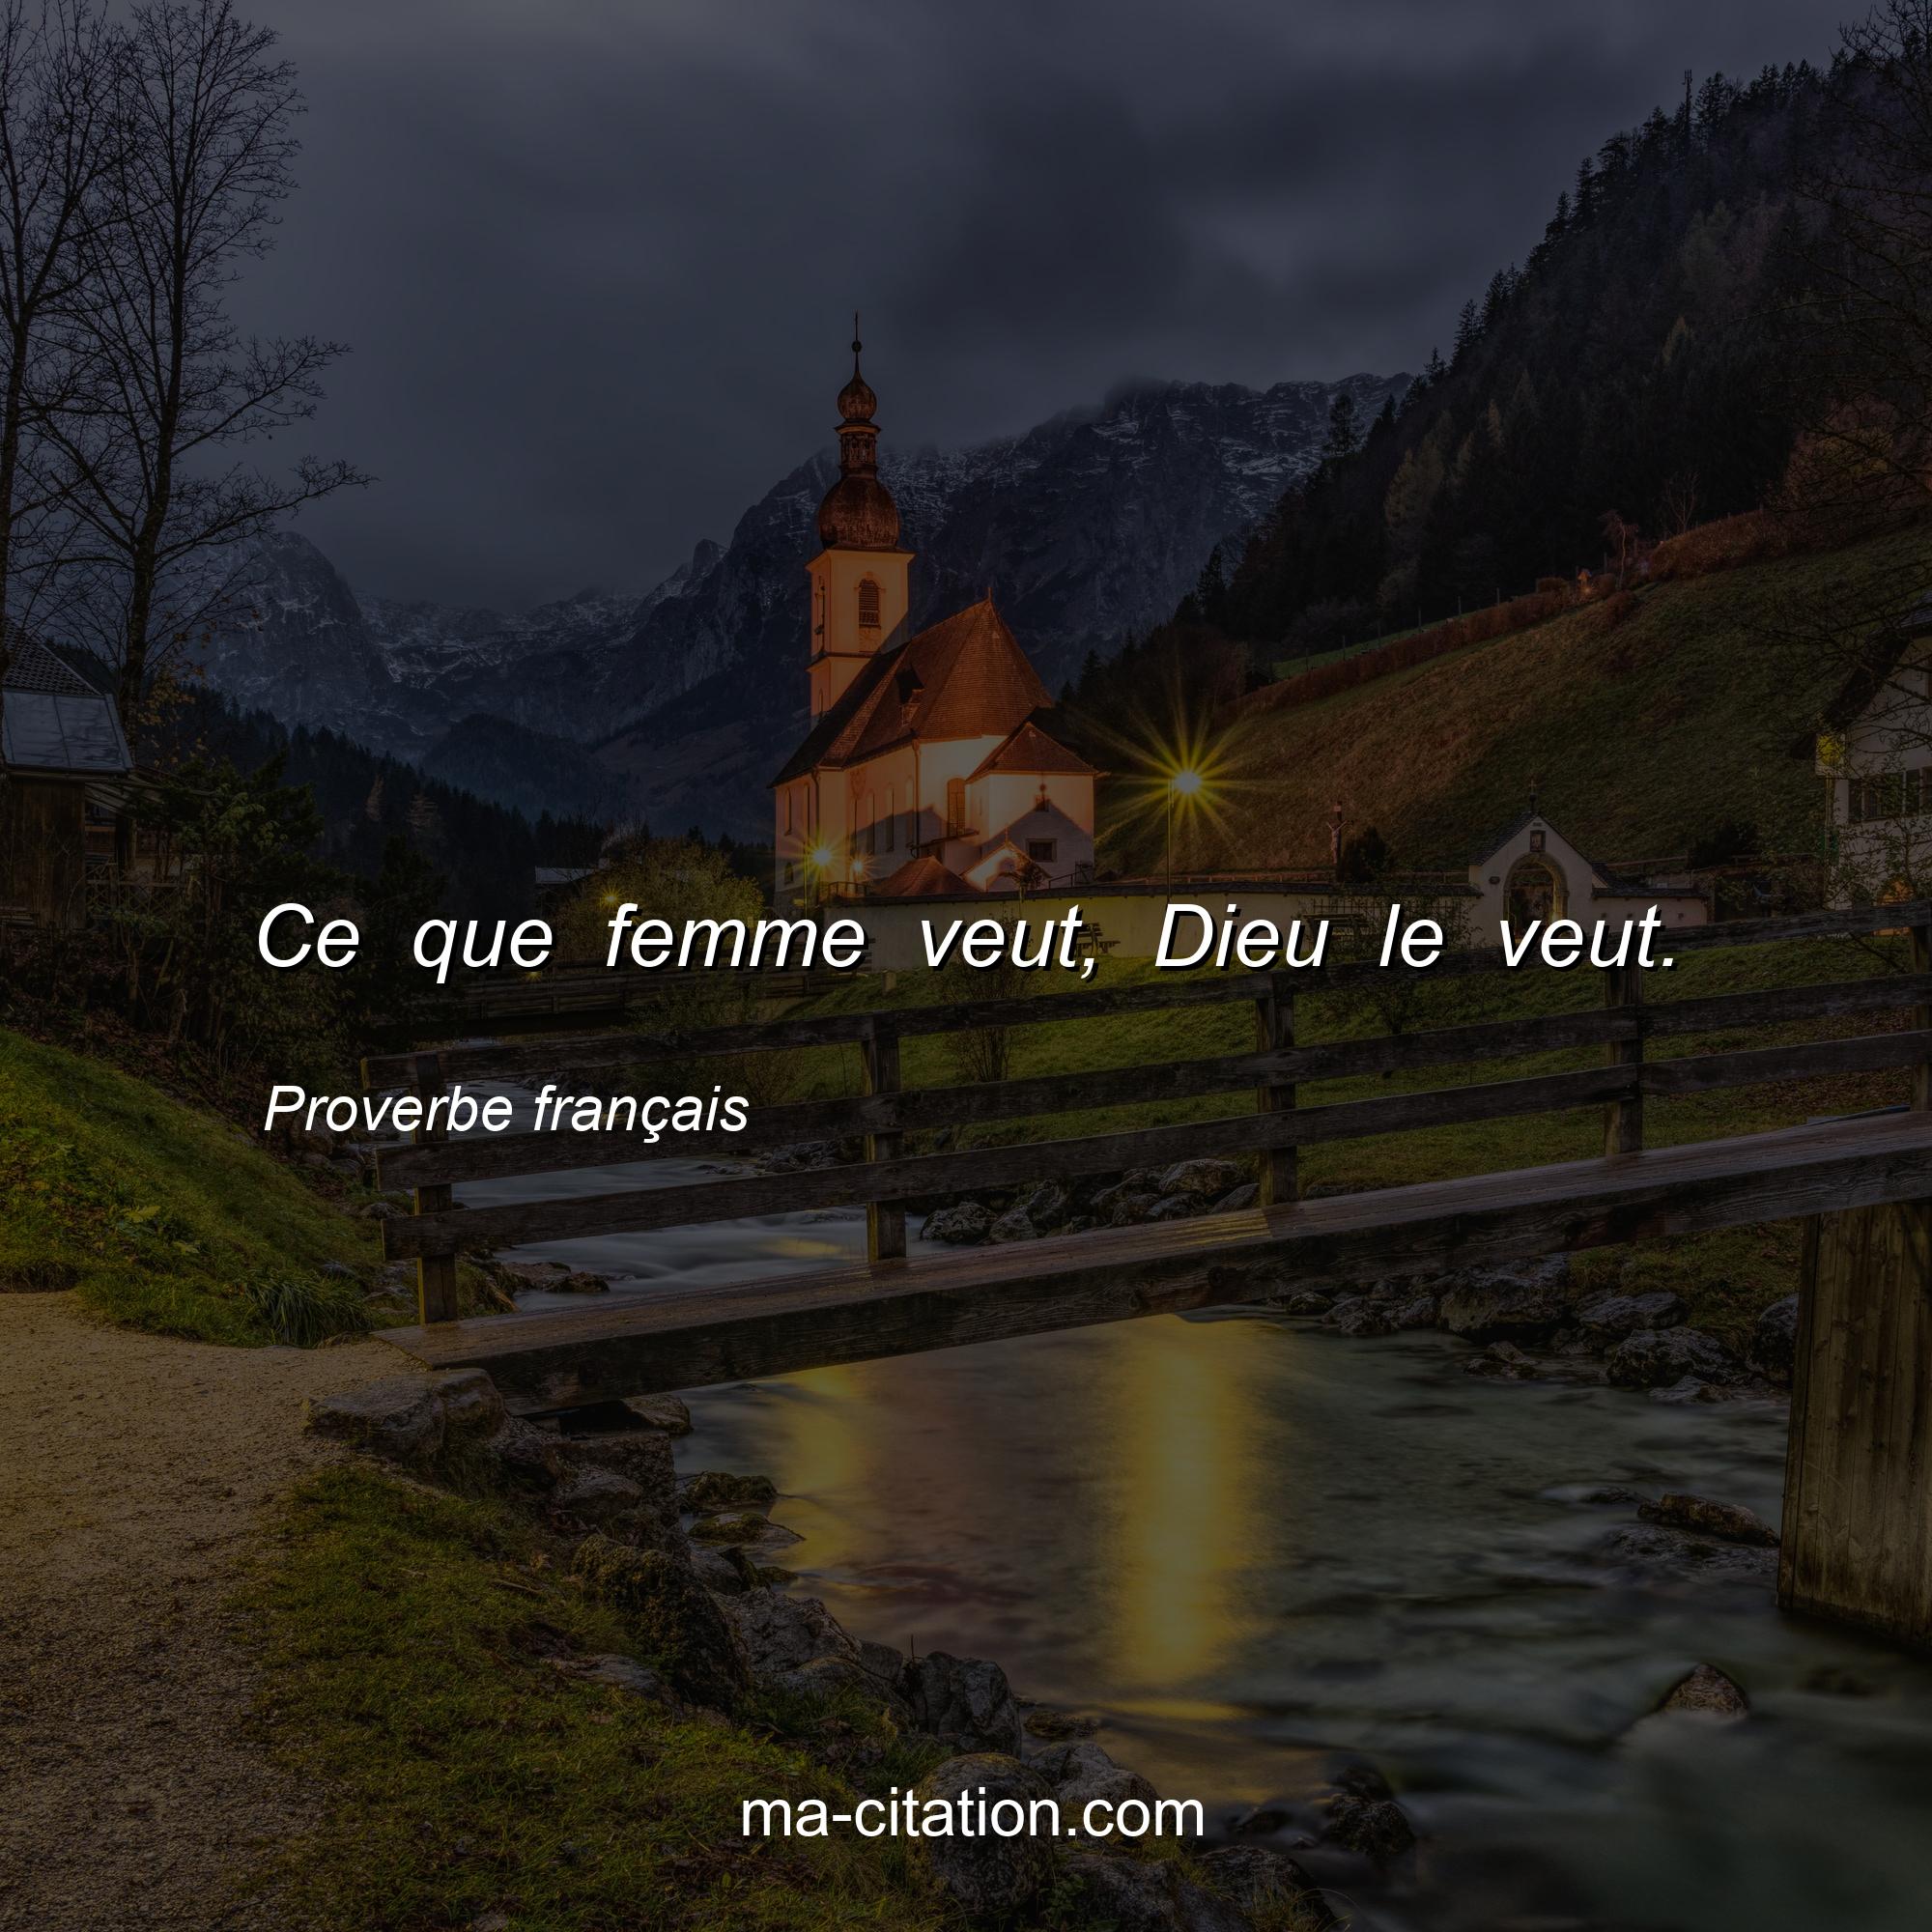 Proverbe français : Ce que femme veut, Dieu le veut.